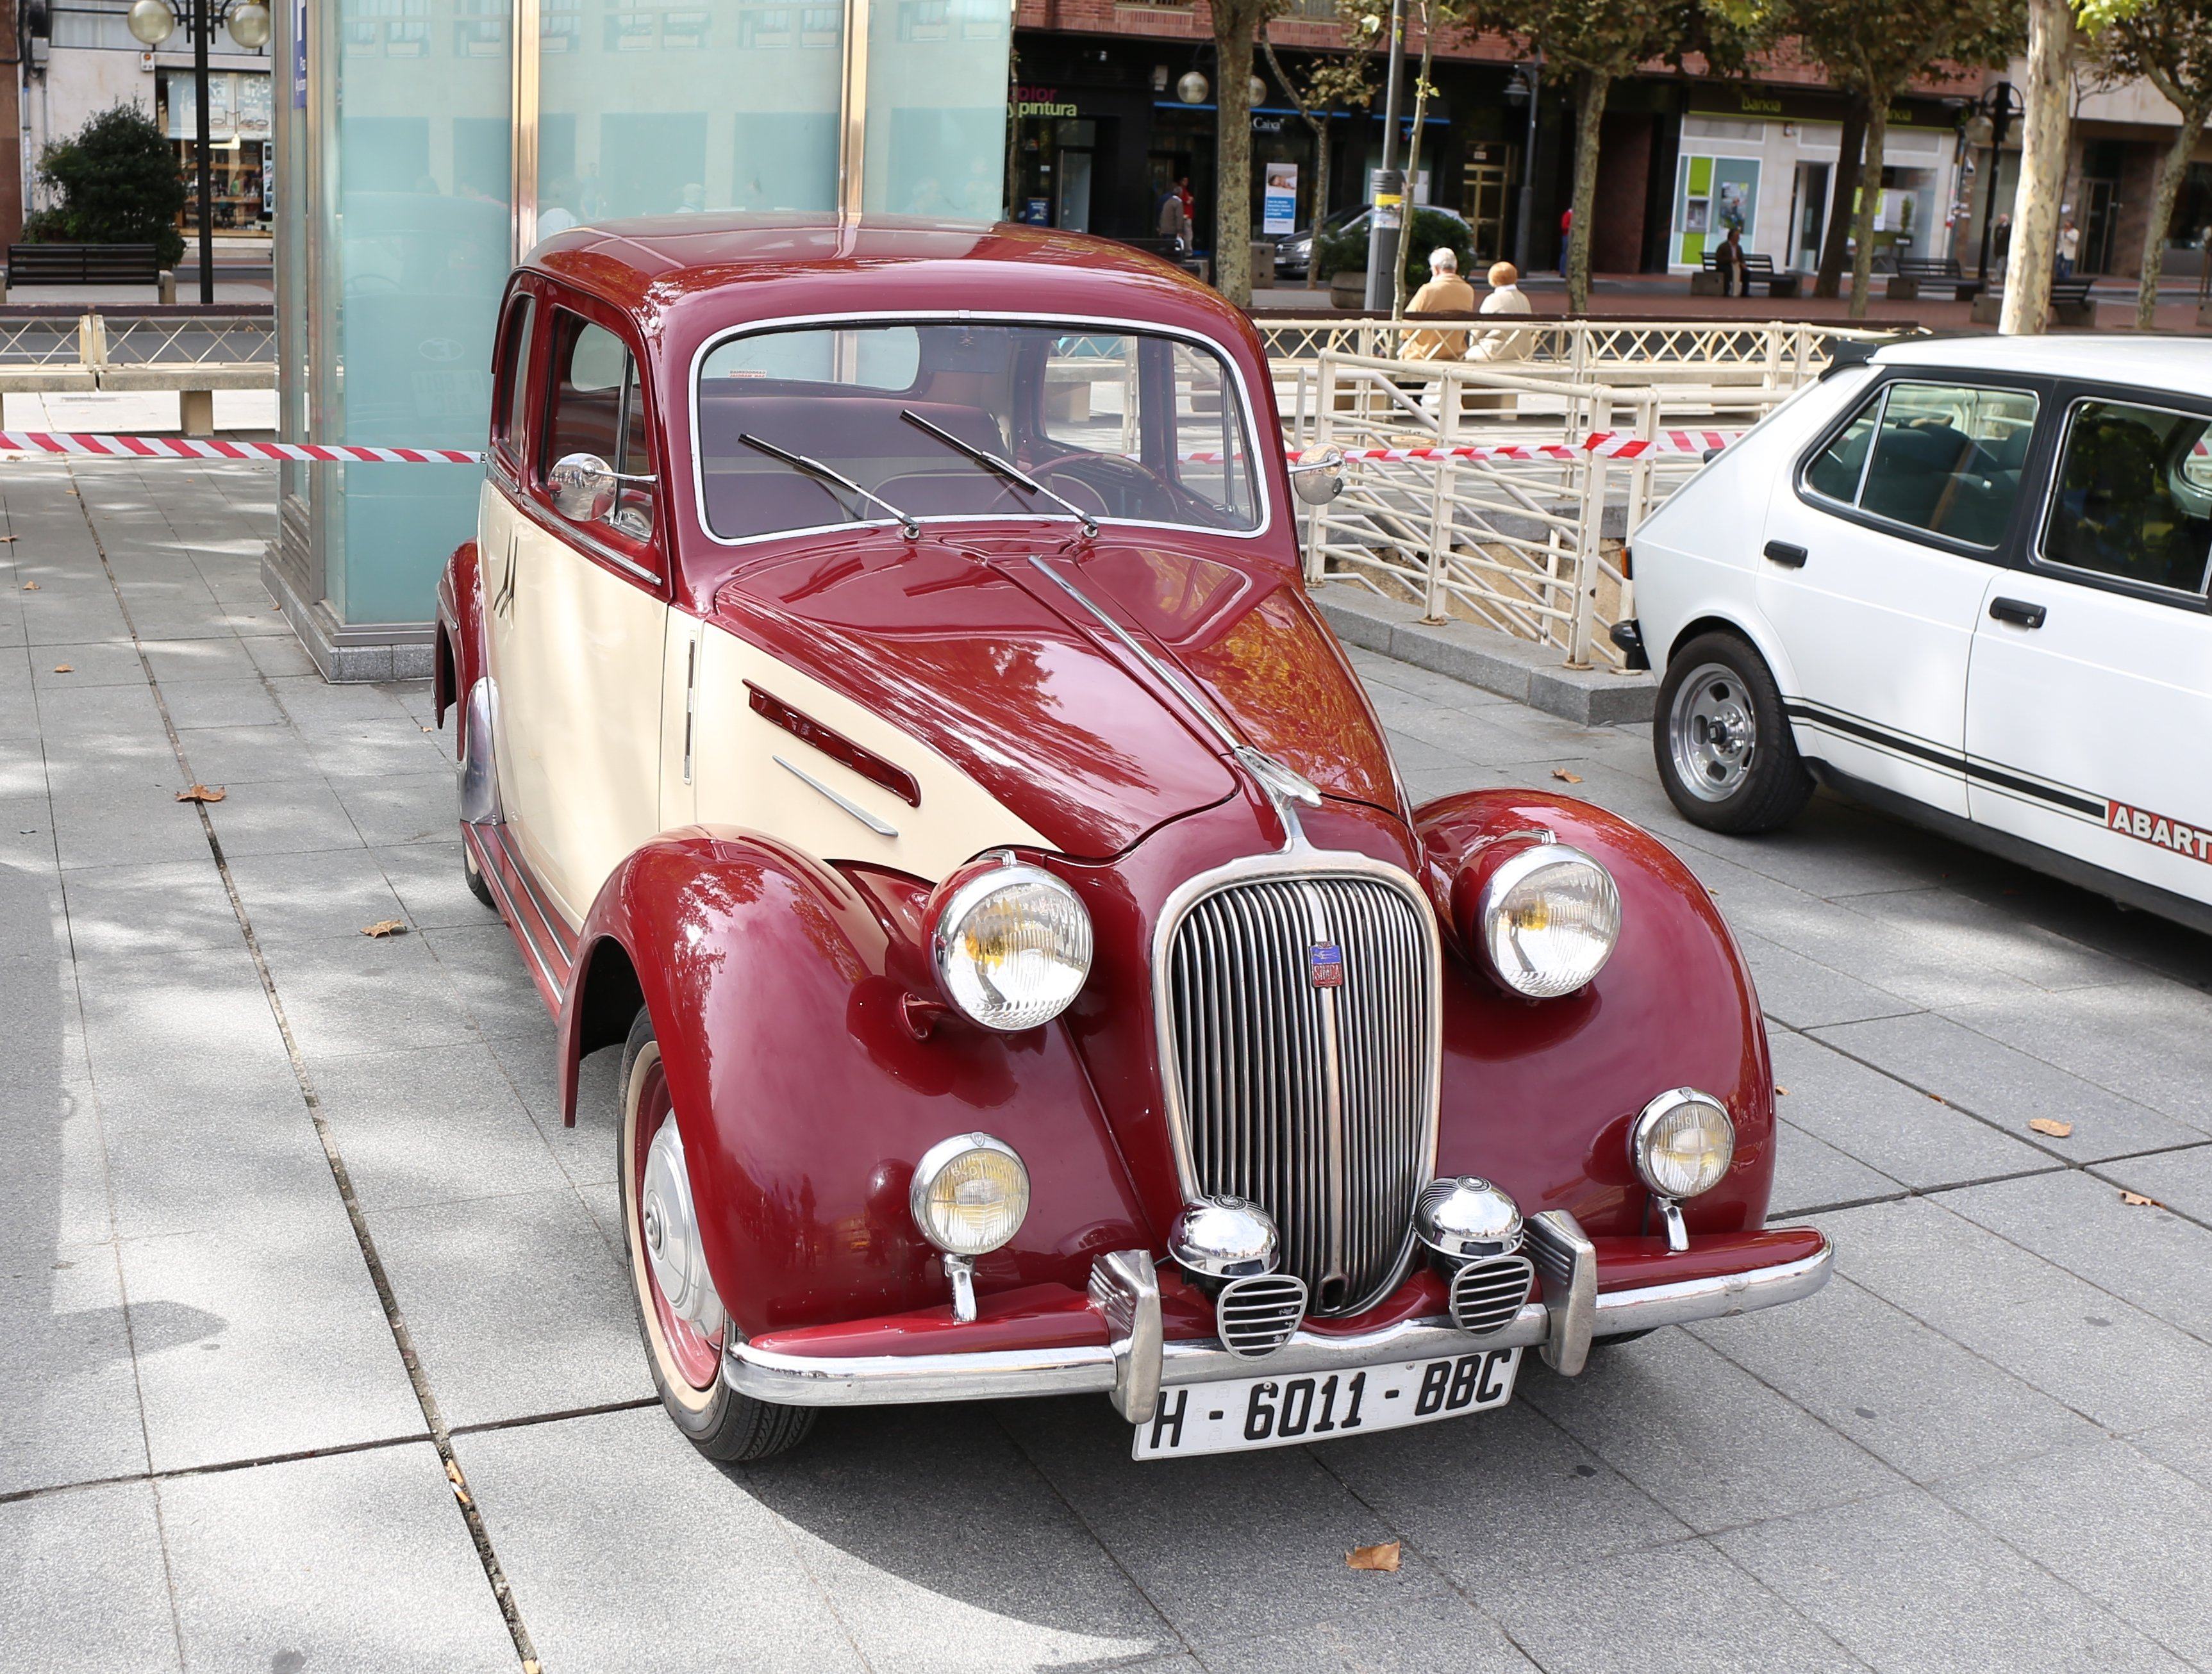 Француз авто. Citroen 1950. Французские машины. Старинные французские автомобили. Французские ретро авто.